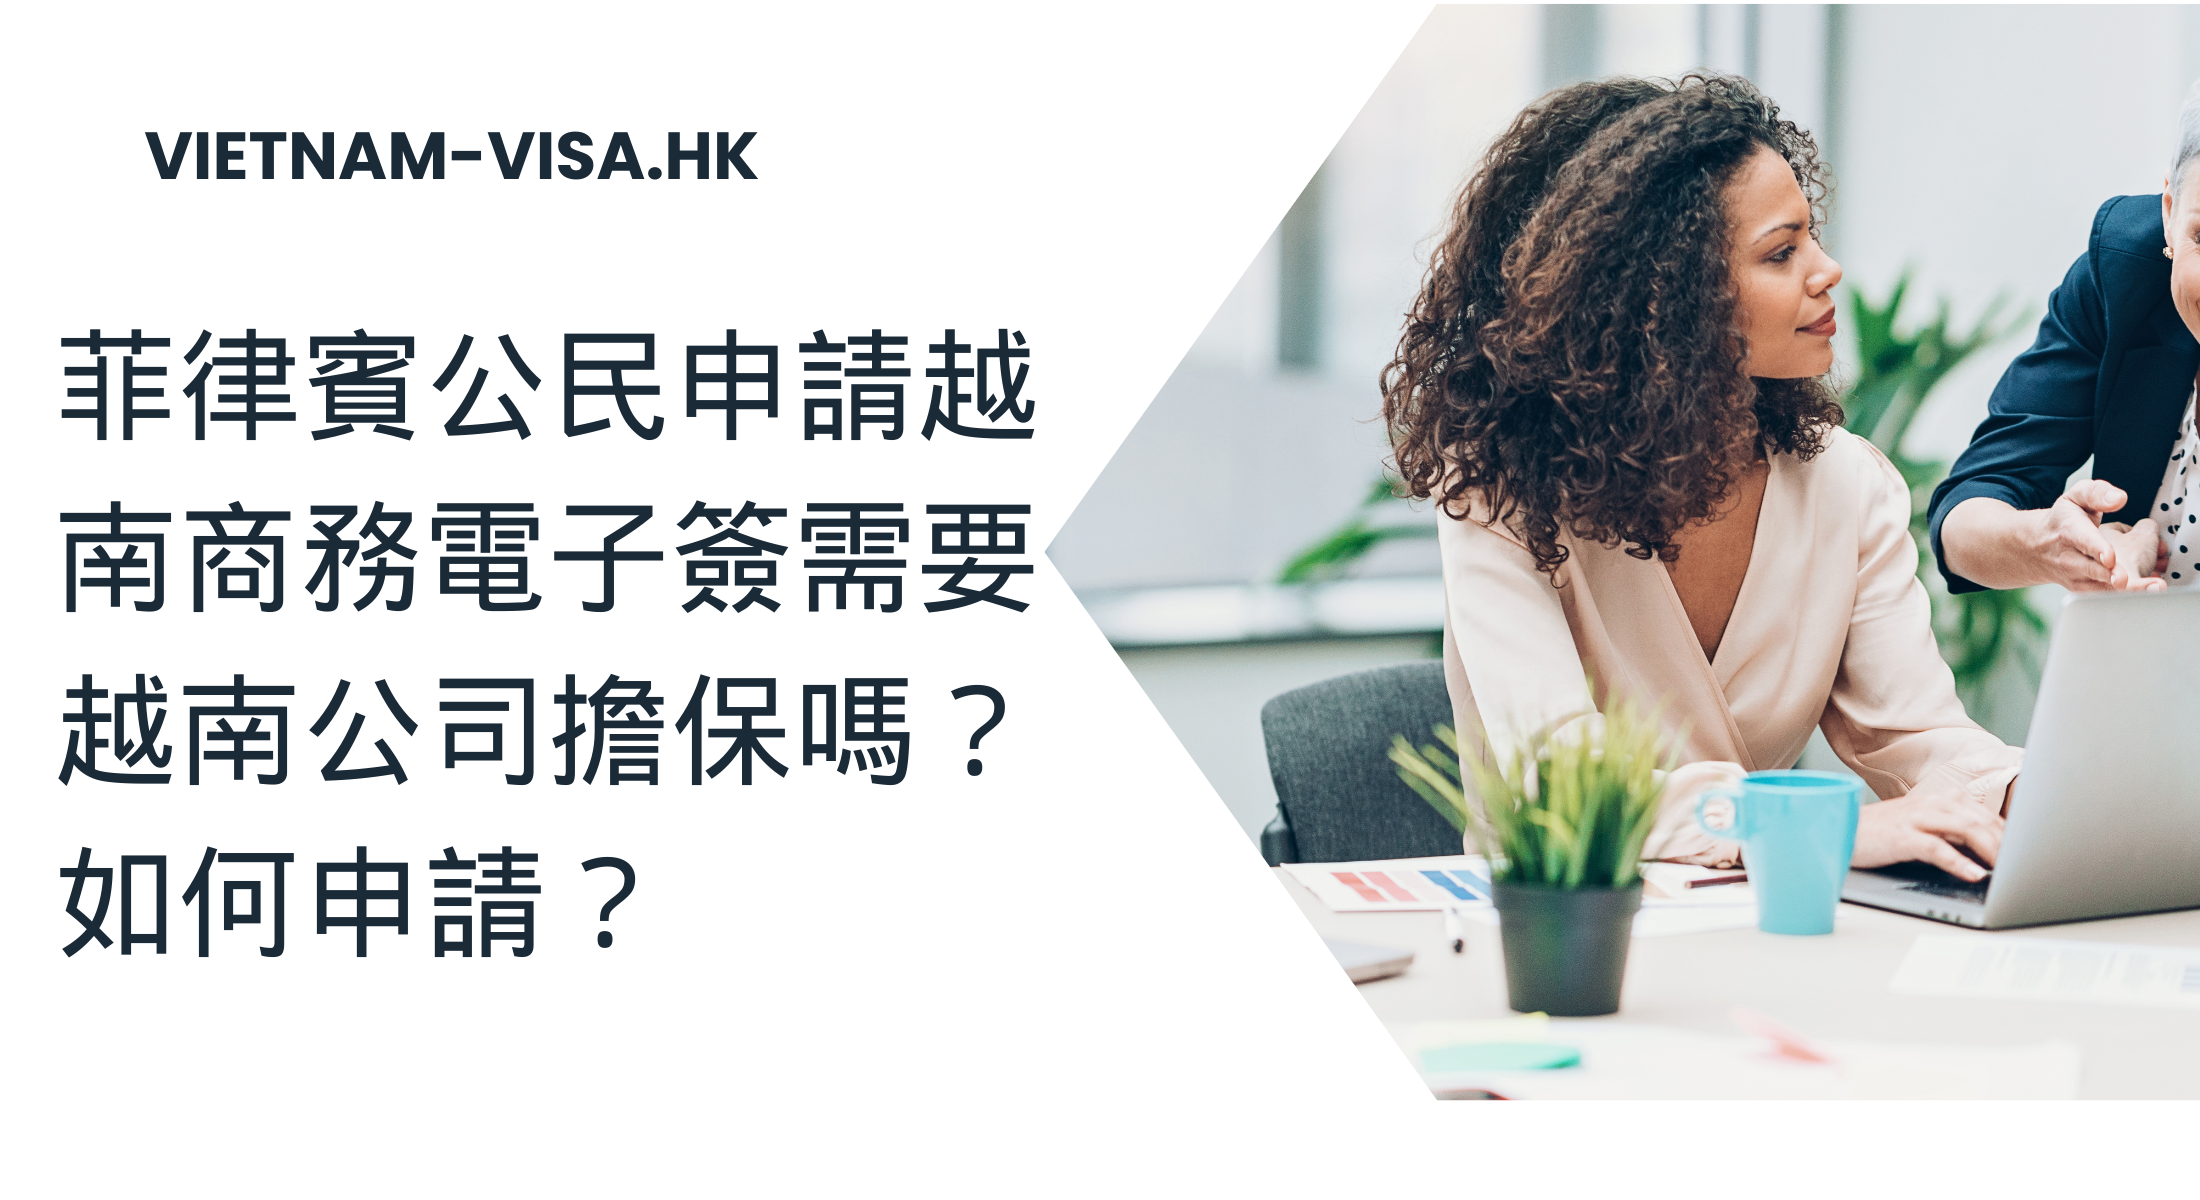 菲律賓公民申請越南商務電子簽需要越南公司擔保嗎？ 如何申請？